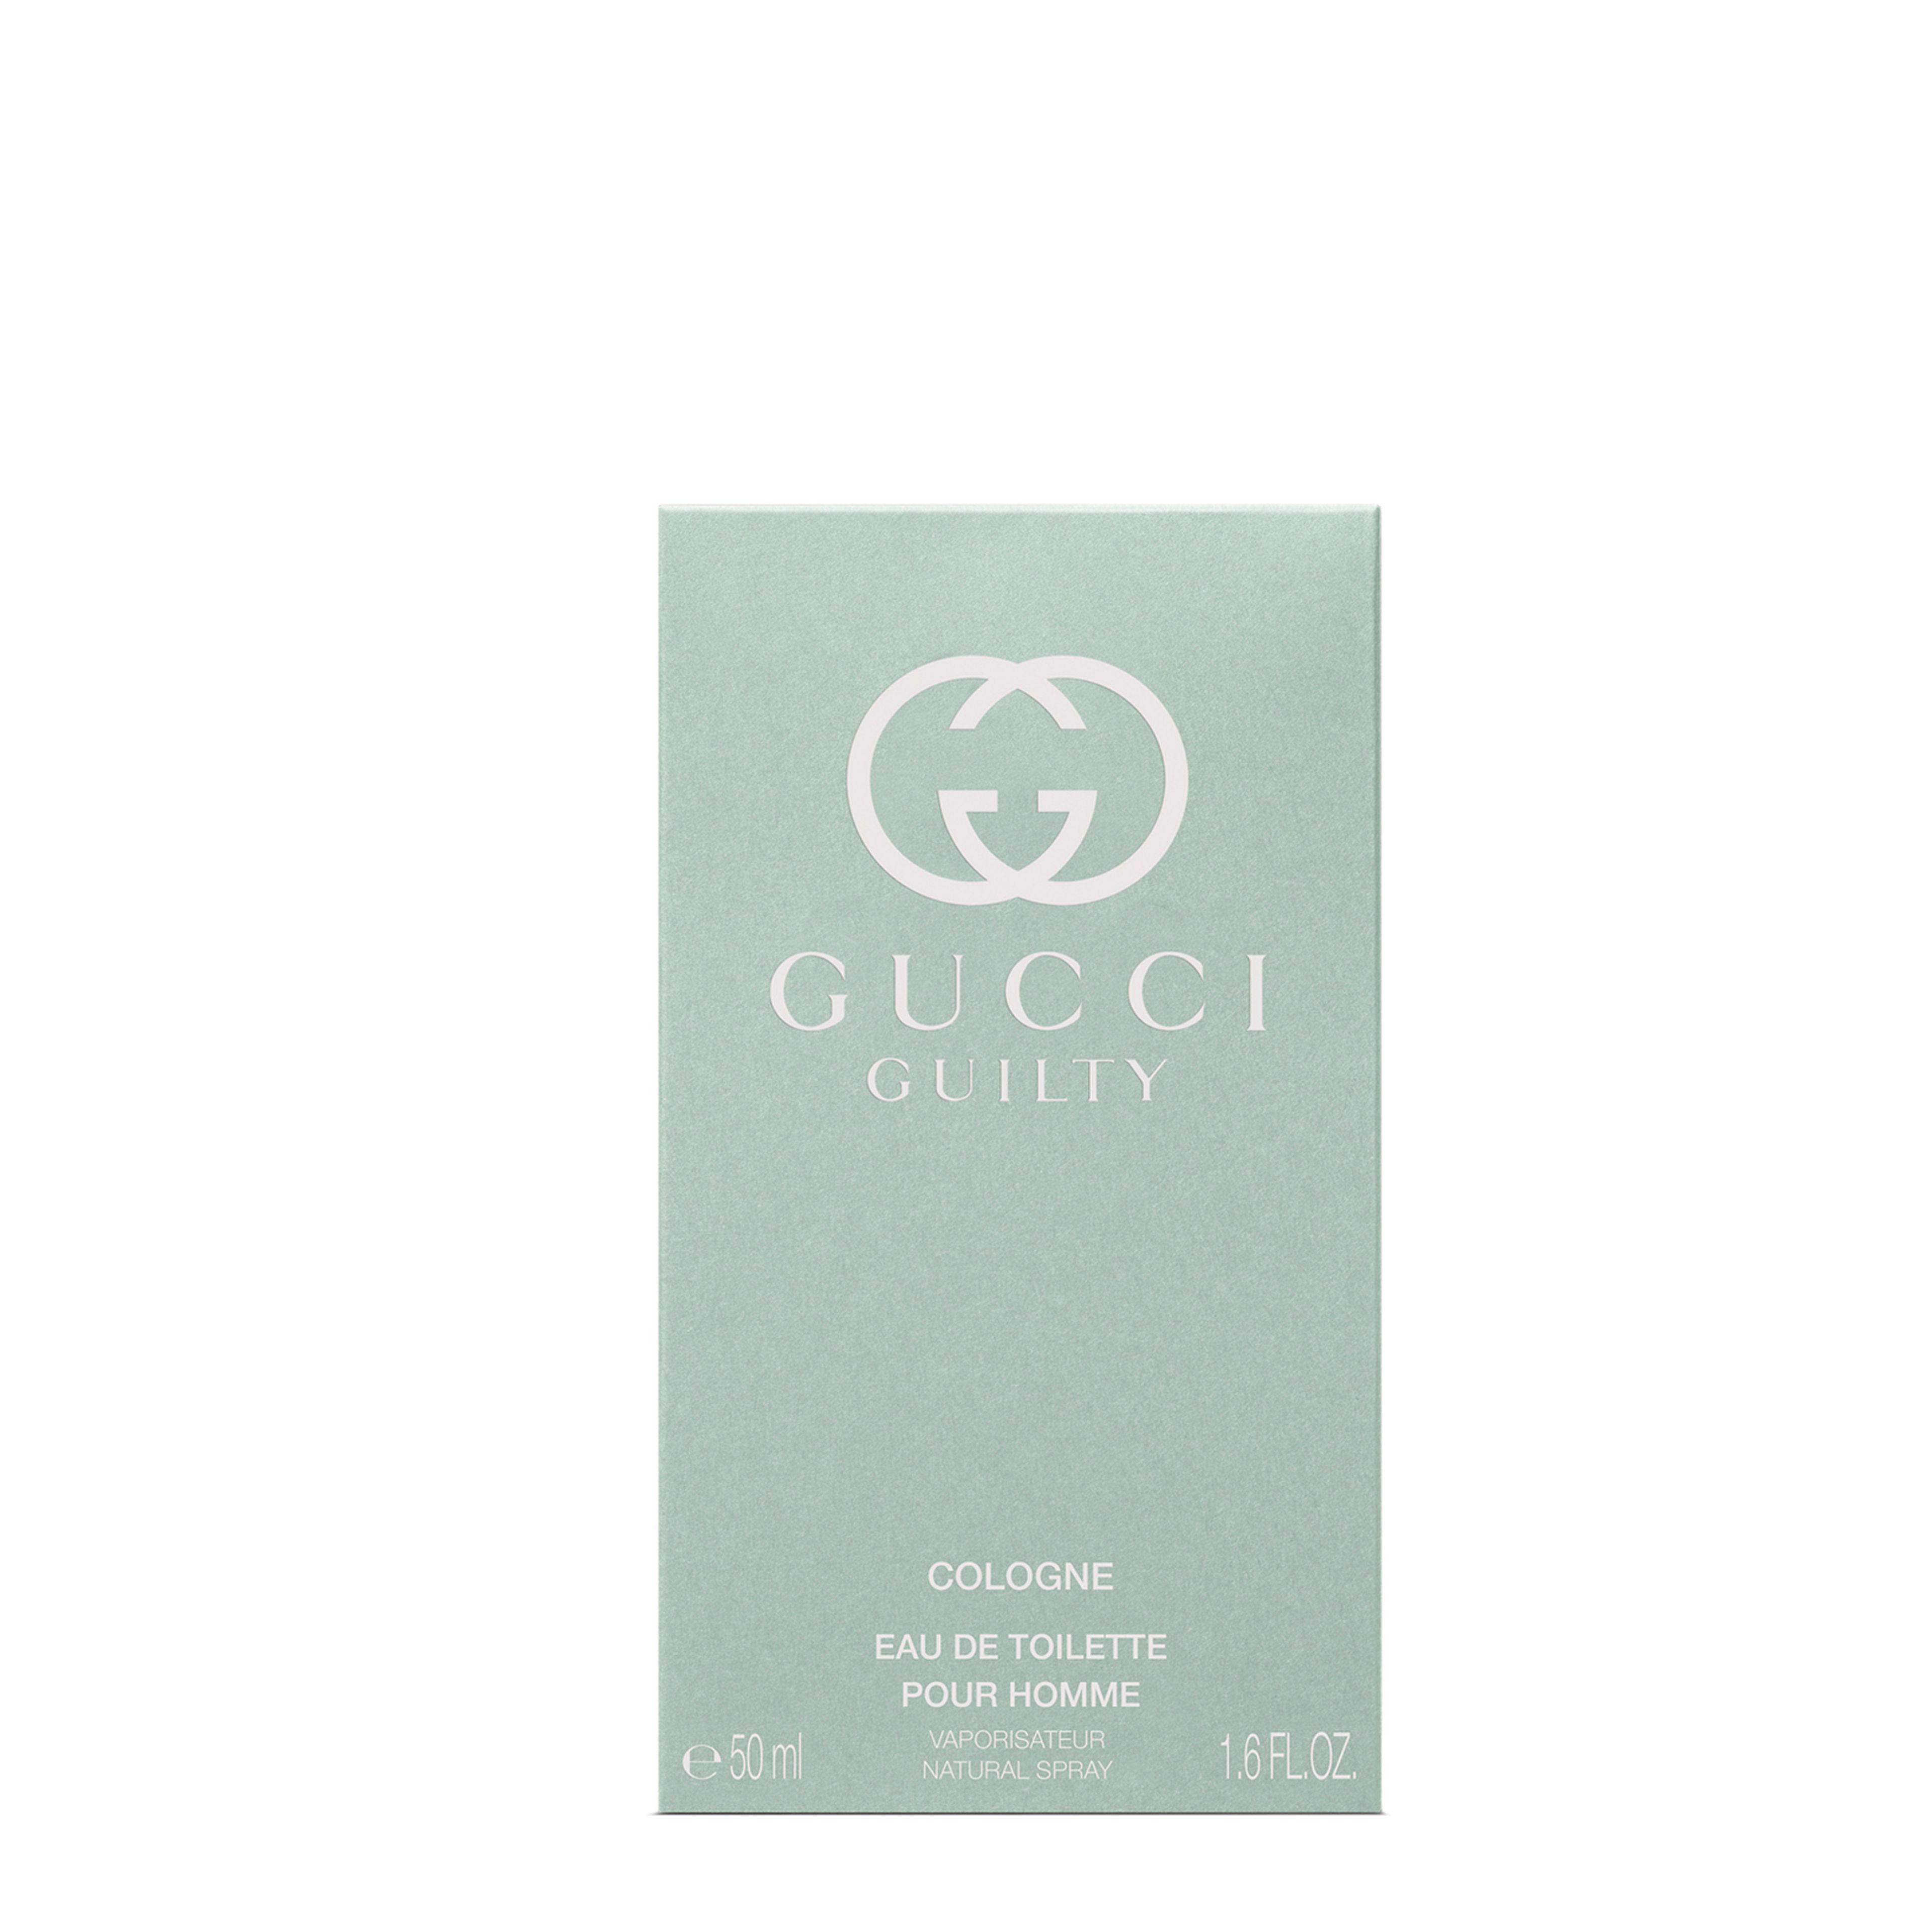 Gucci Gucci Guilty Cologne Eau De Toilette Pour Homme 3